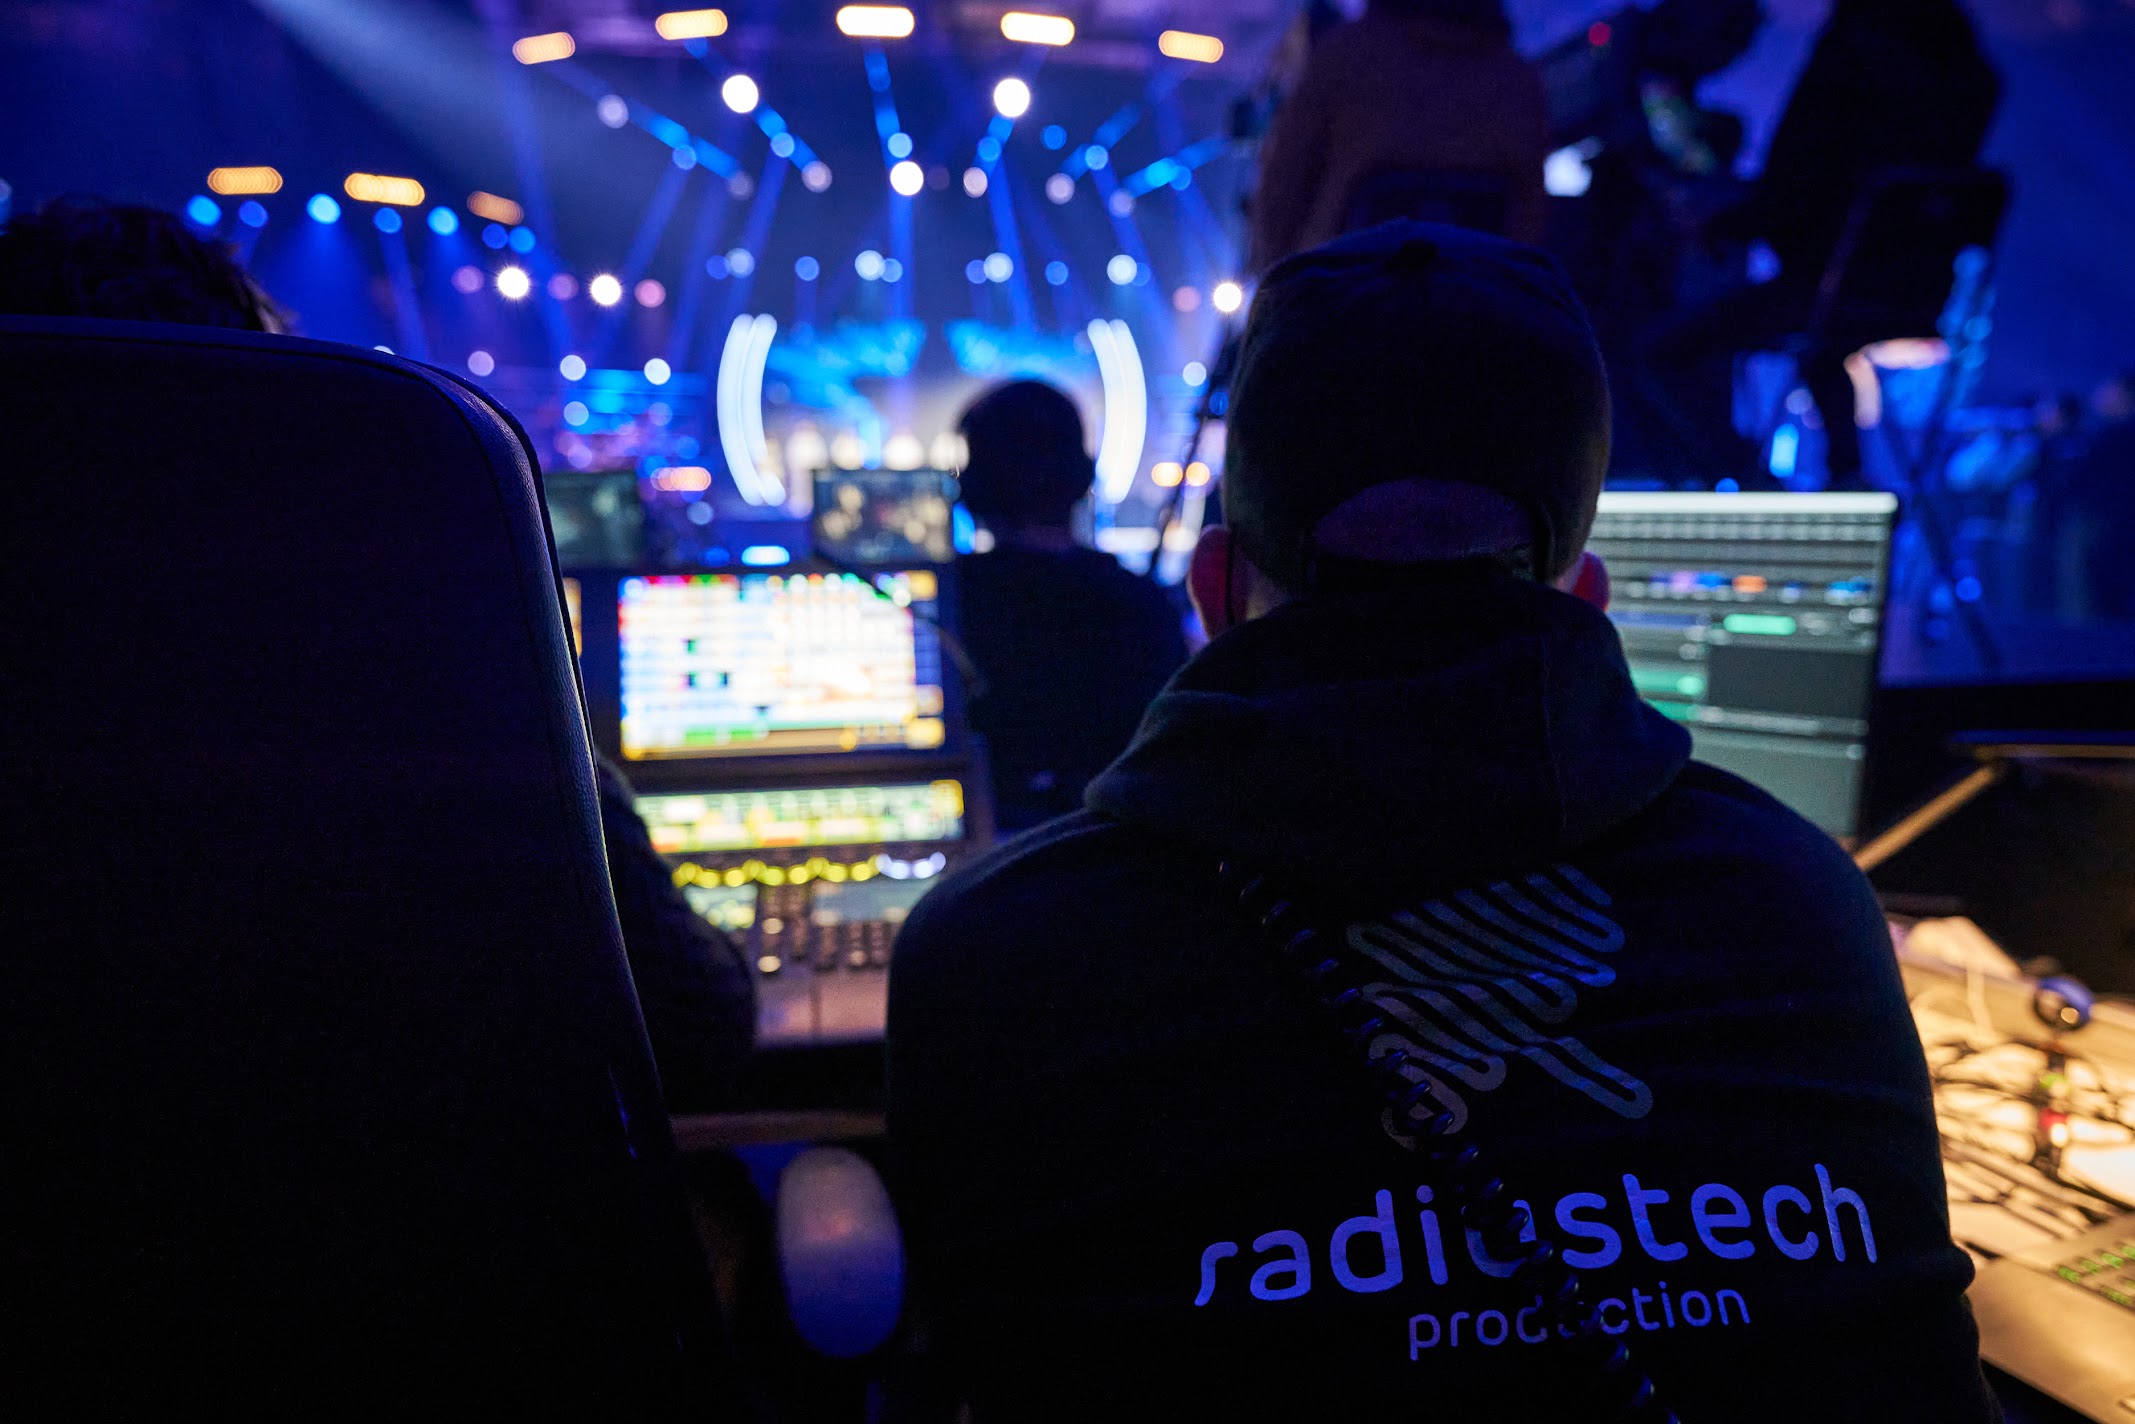 Eesti_otsib_superstaari_2021_radiustech_production_011